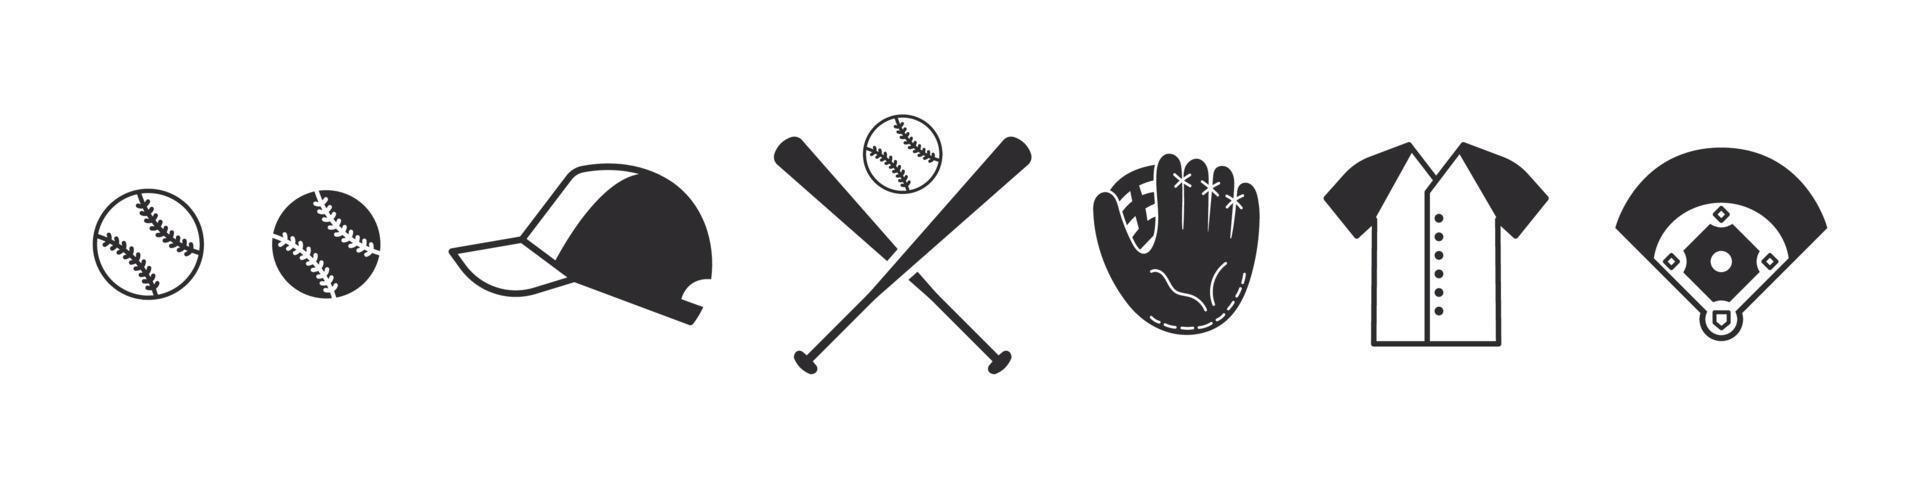 ensemble d'icônes de base-ball. signes de base-ball. éléments de baseball pour la conception. icônes vectorielles vecteur